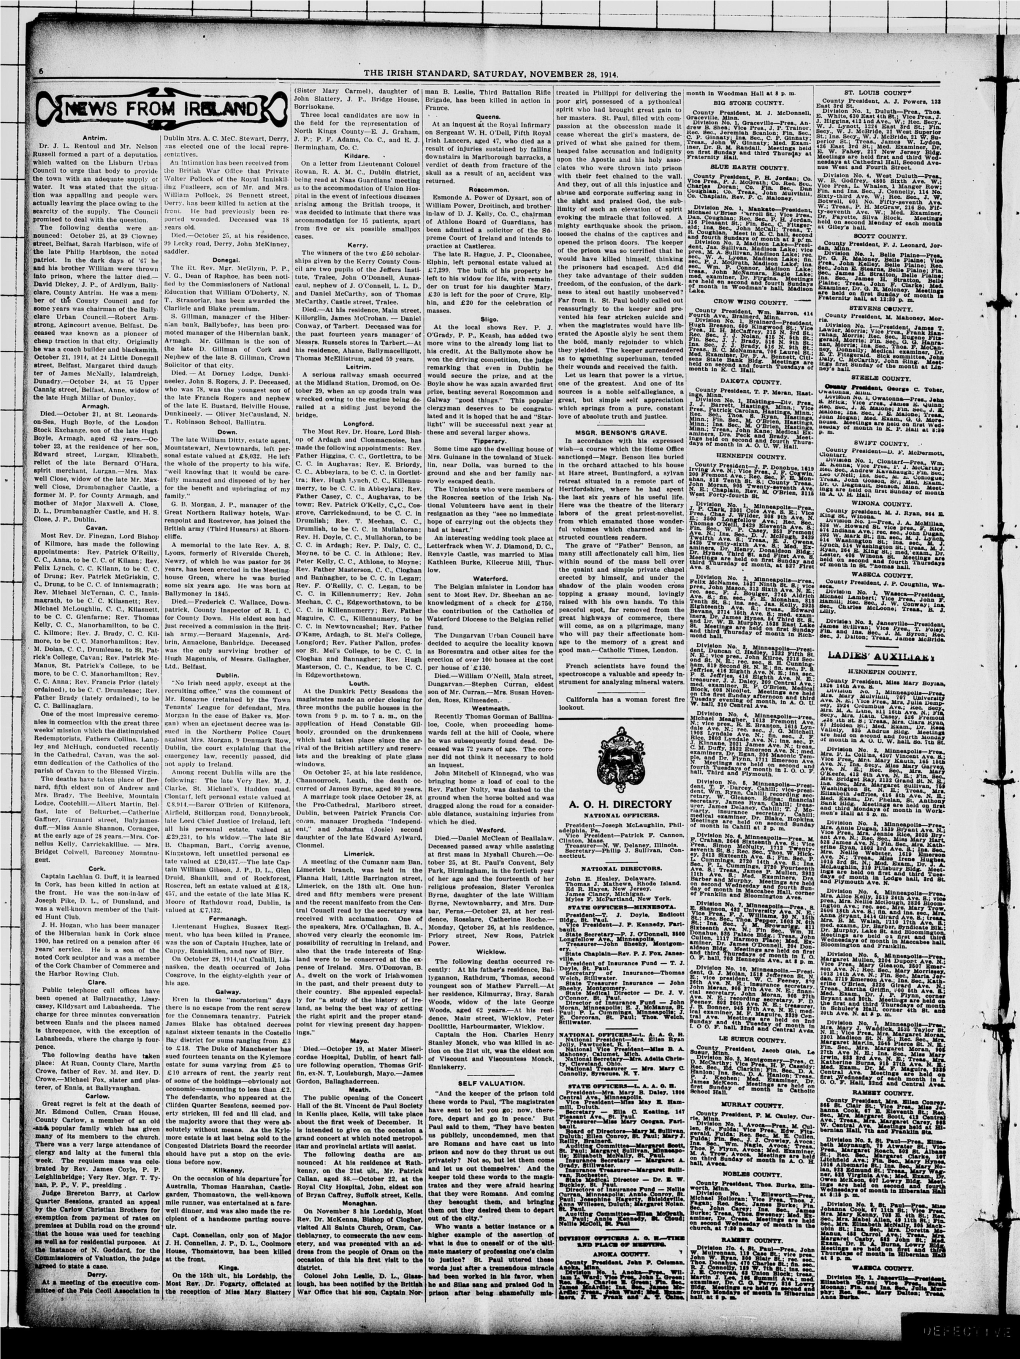 The Irish Standard. (Minneapolis, Minn. ; St. Paul, Minn.), 1914-11